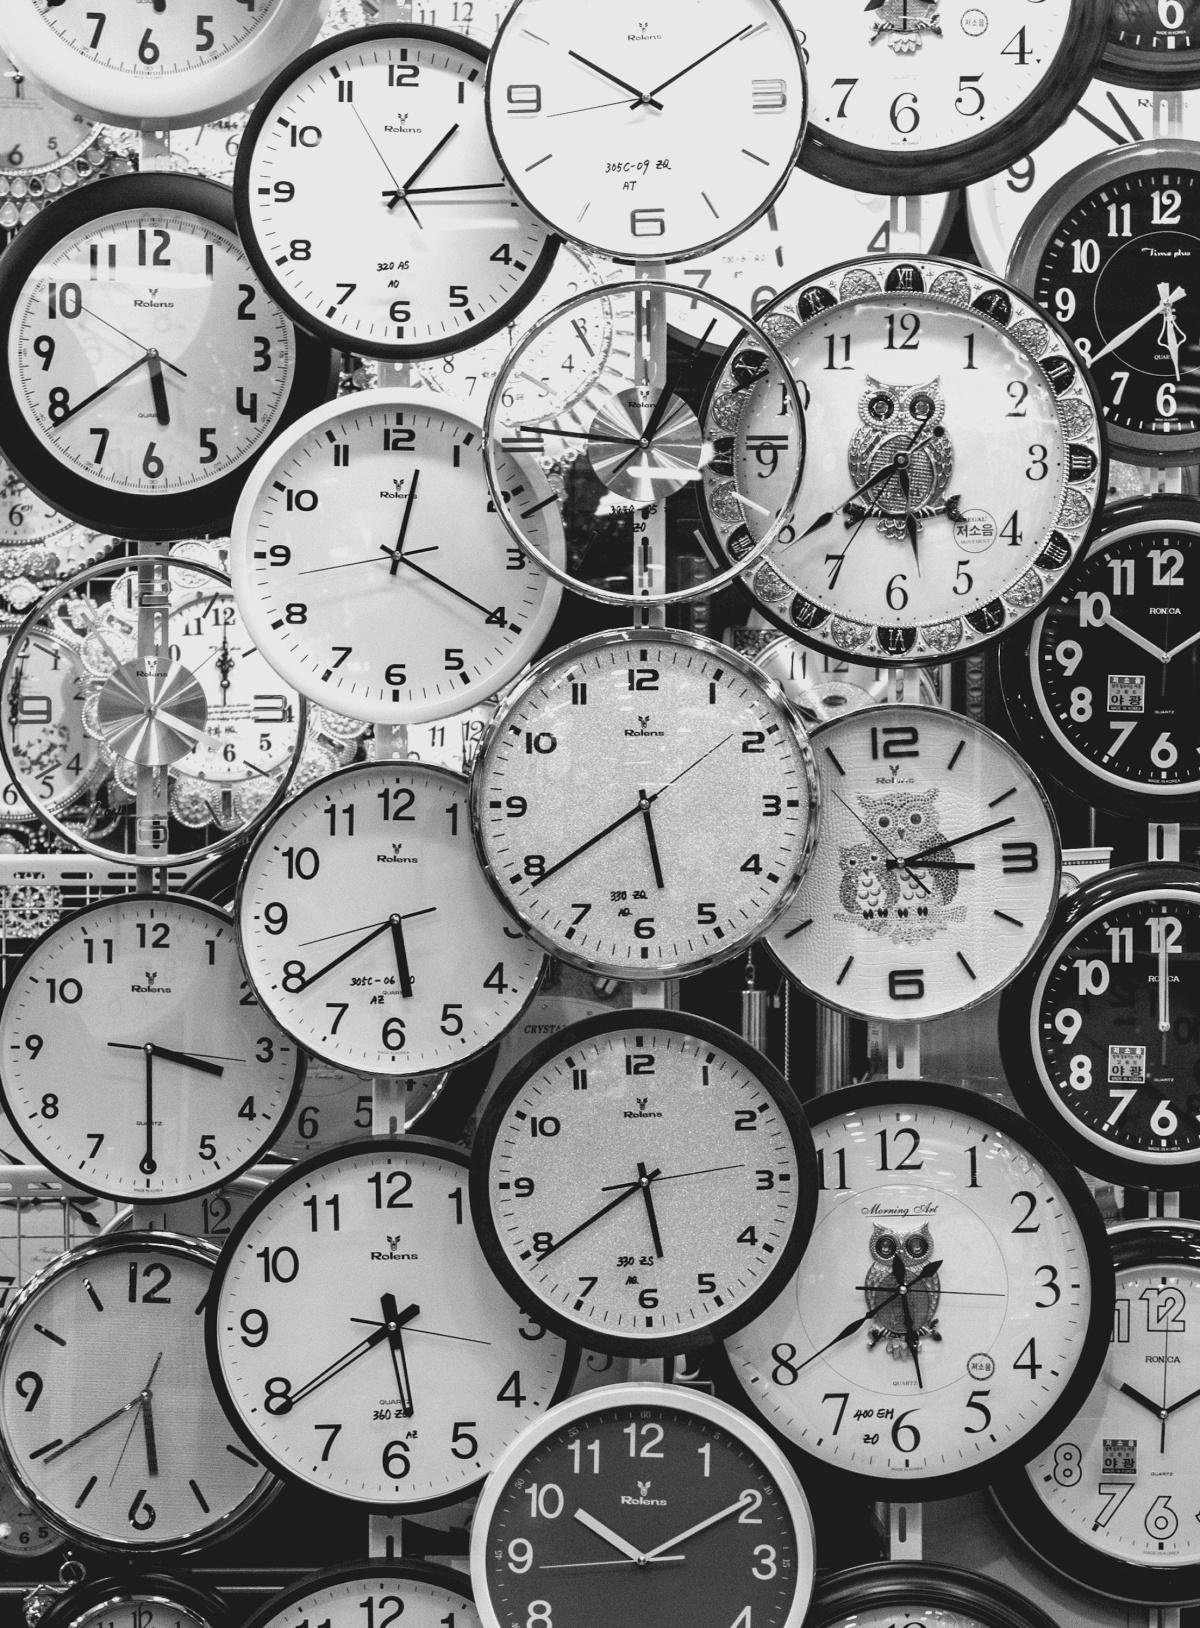 La technologie de l'horloge atomique et le défi du temps